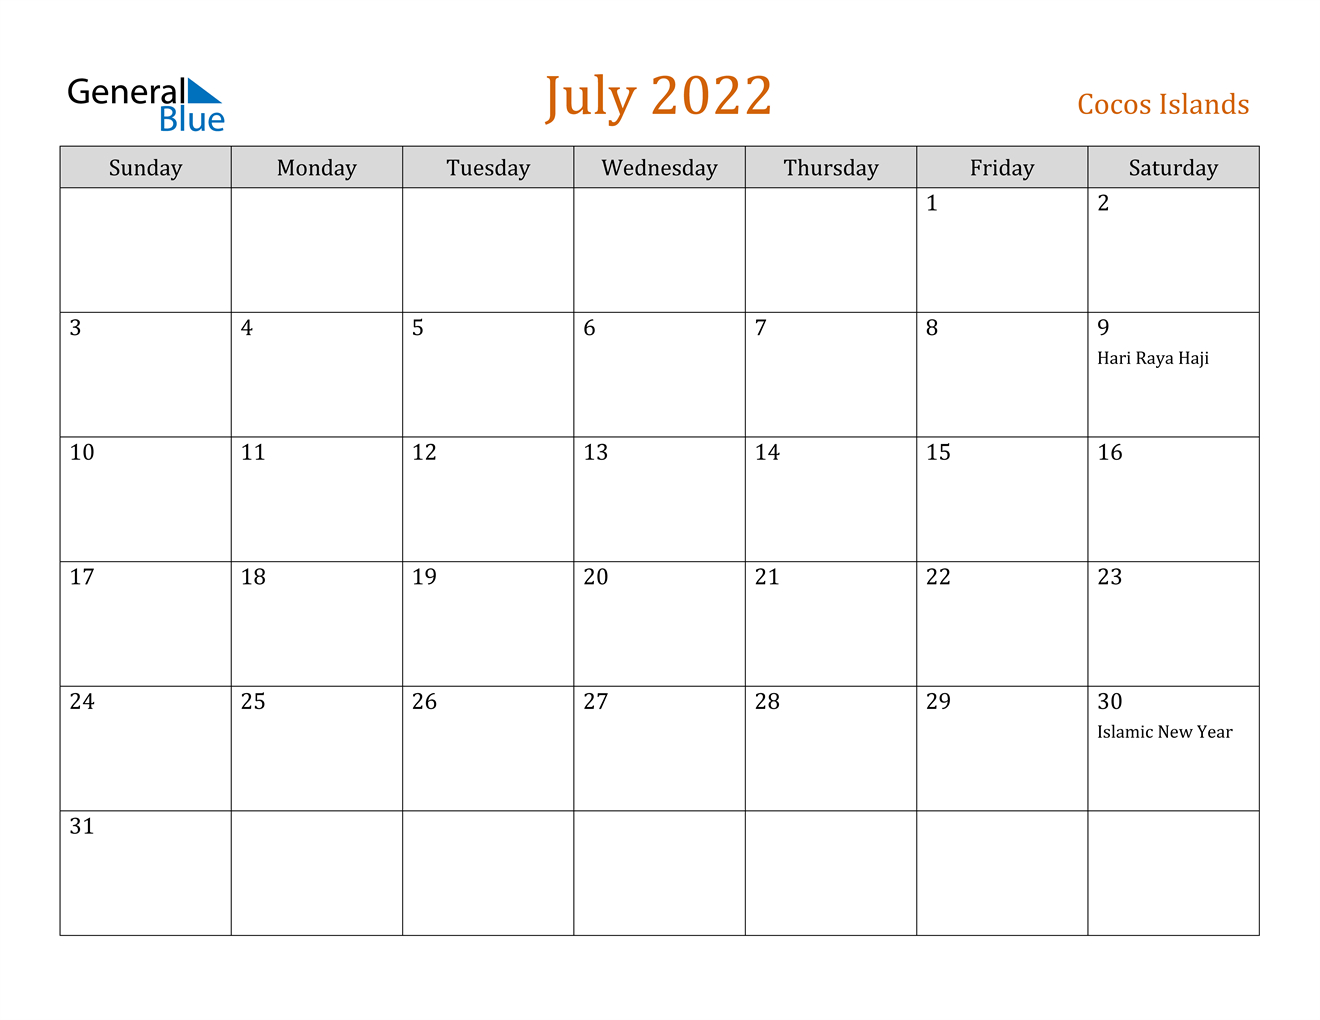 July 2022 Calendar - Cocos Islands